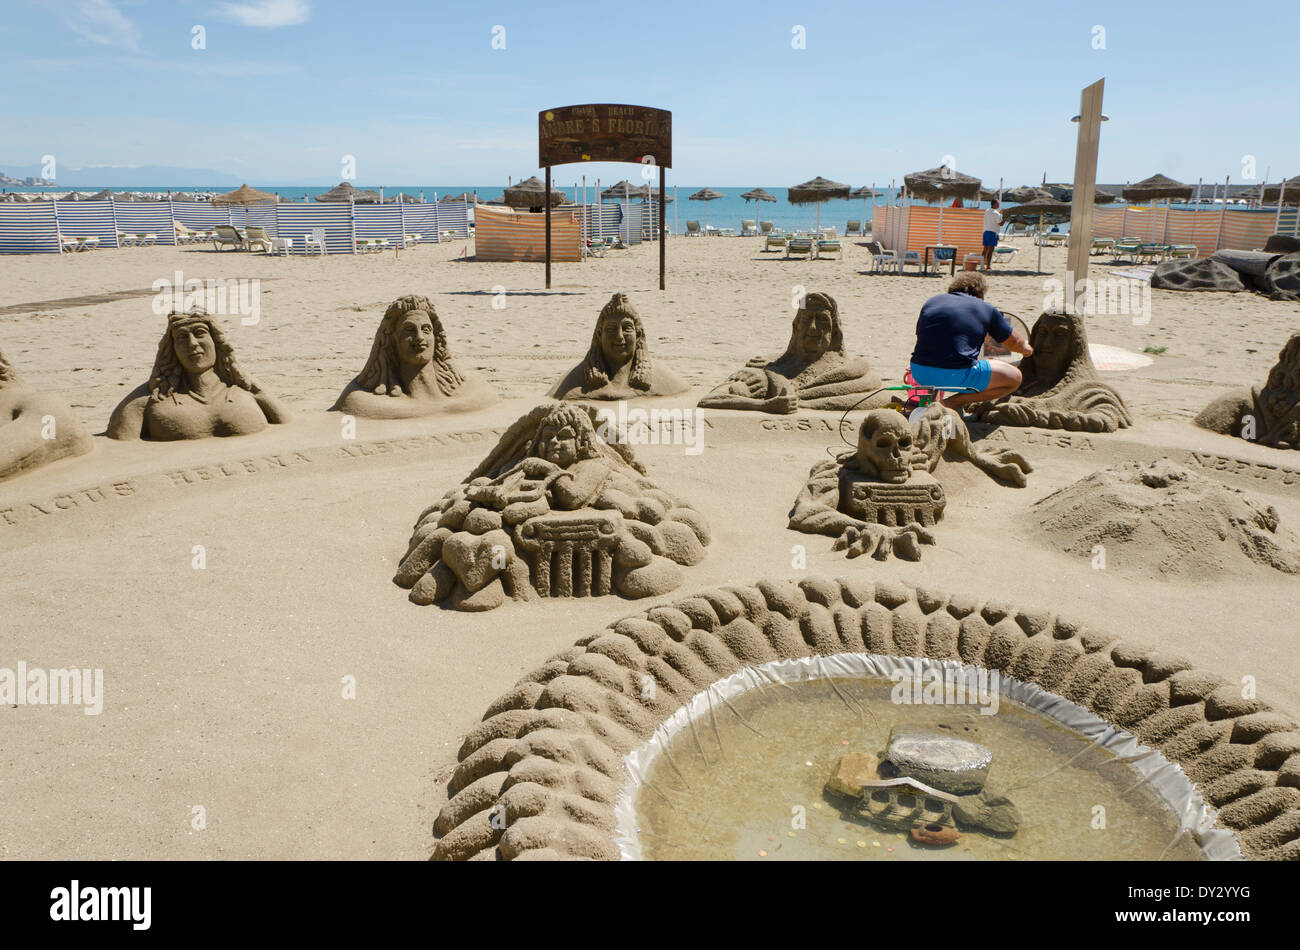 Sandskulpturen, Vertreter der griechischen und römischen Personen am Strand von Fuengirola, Spanien gemacht worden. Stockfoto